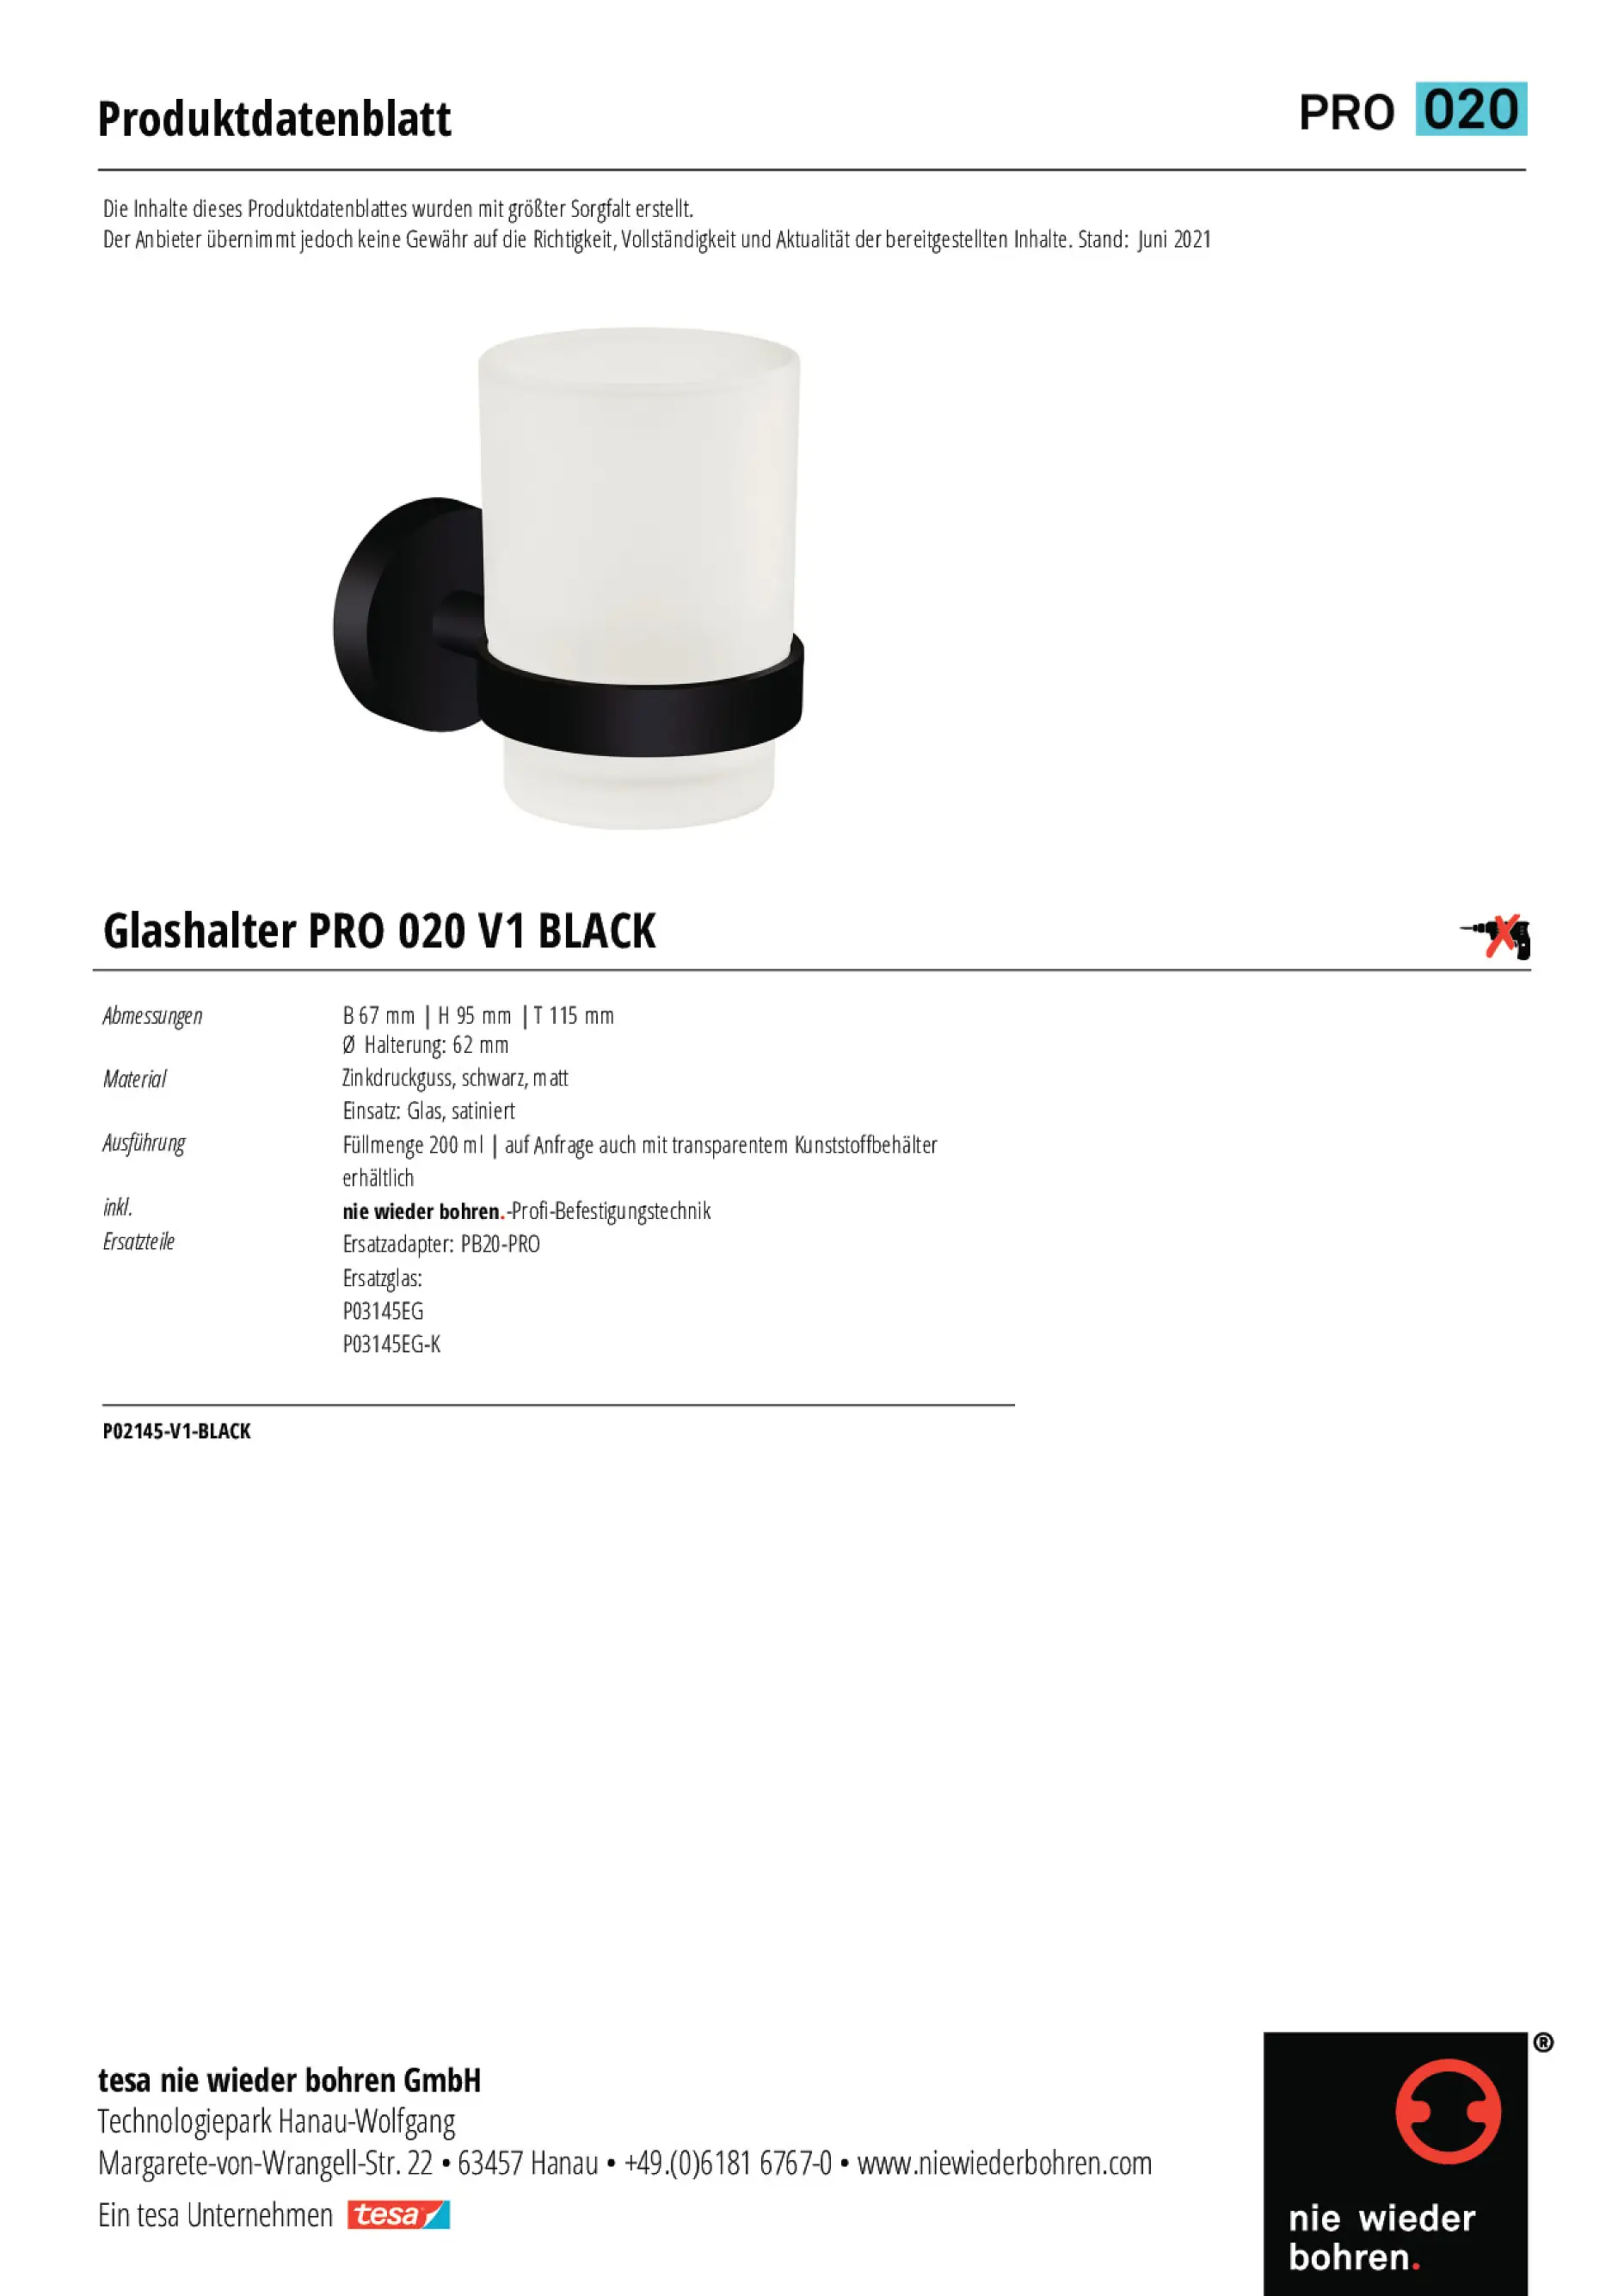 P02145-V1-BLACK